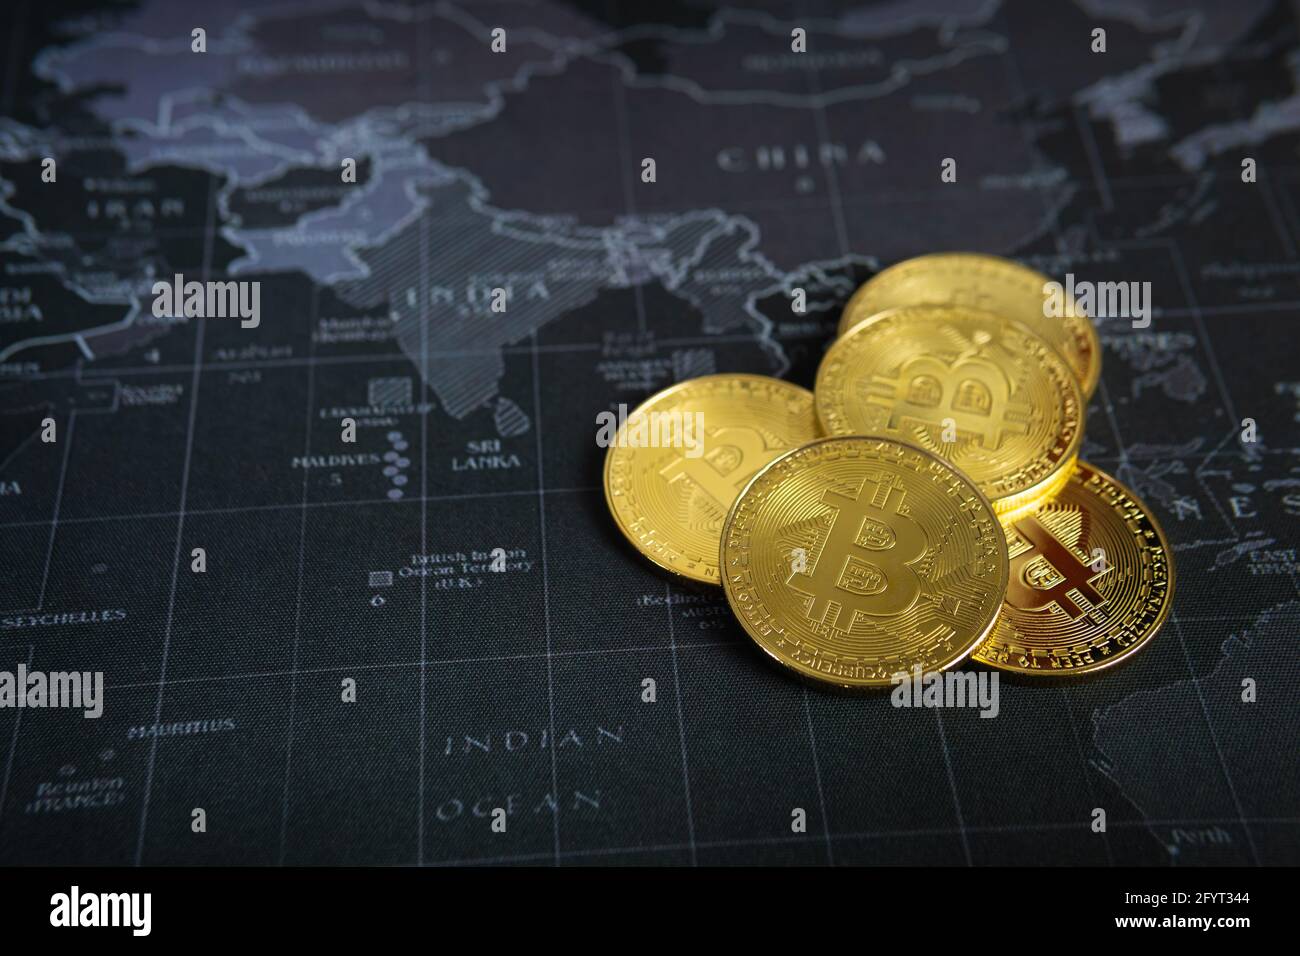 Technologie de blockchain à crypto-monnaie Bitcoin sur le fond de la carte mondiale Banque D'Images